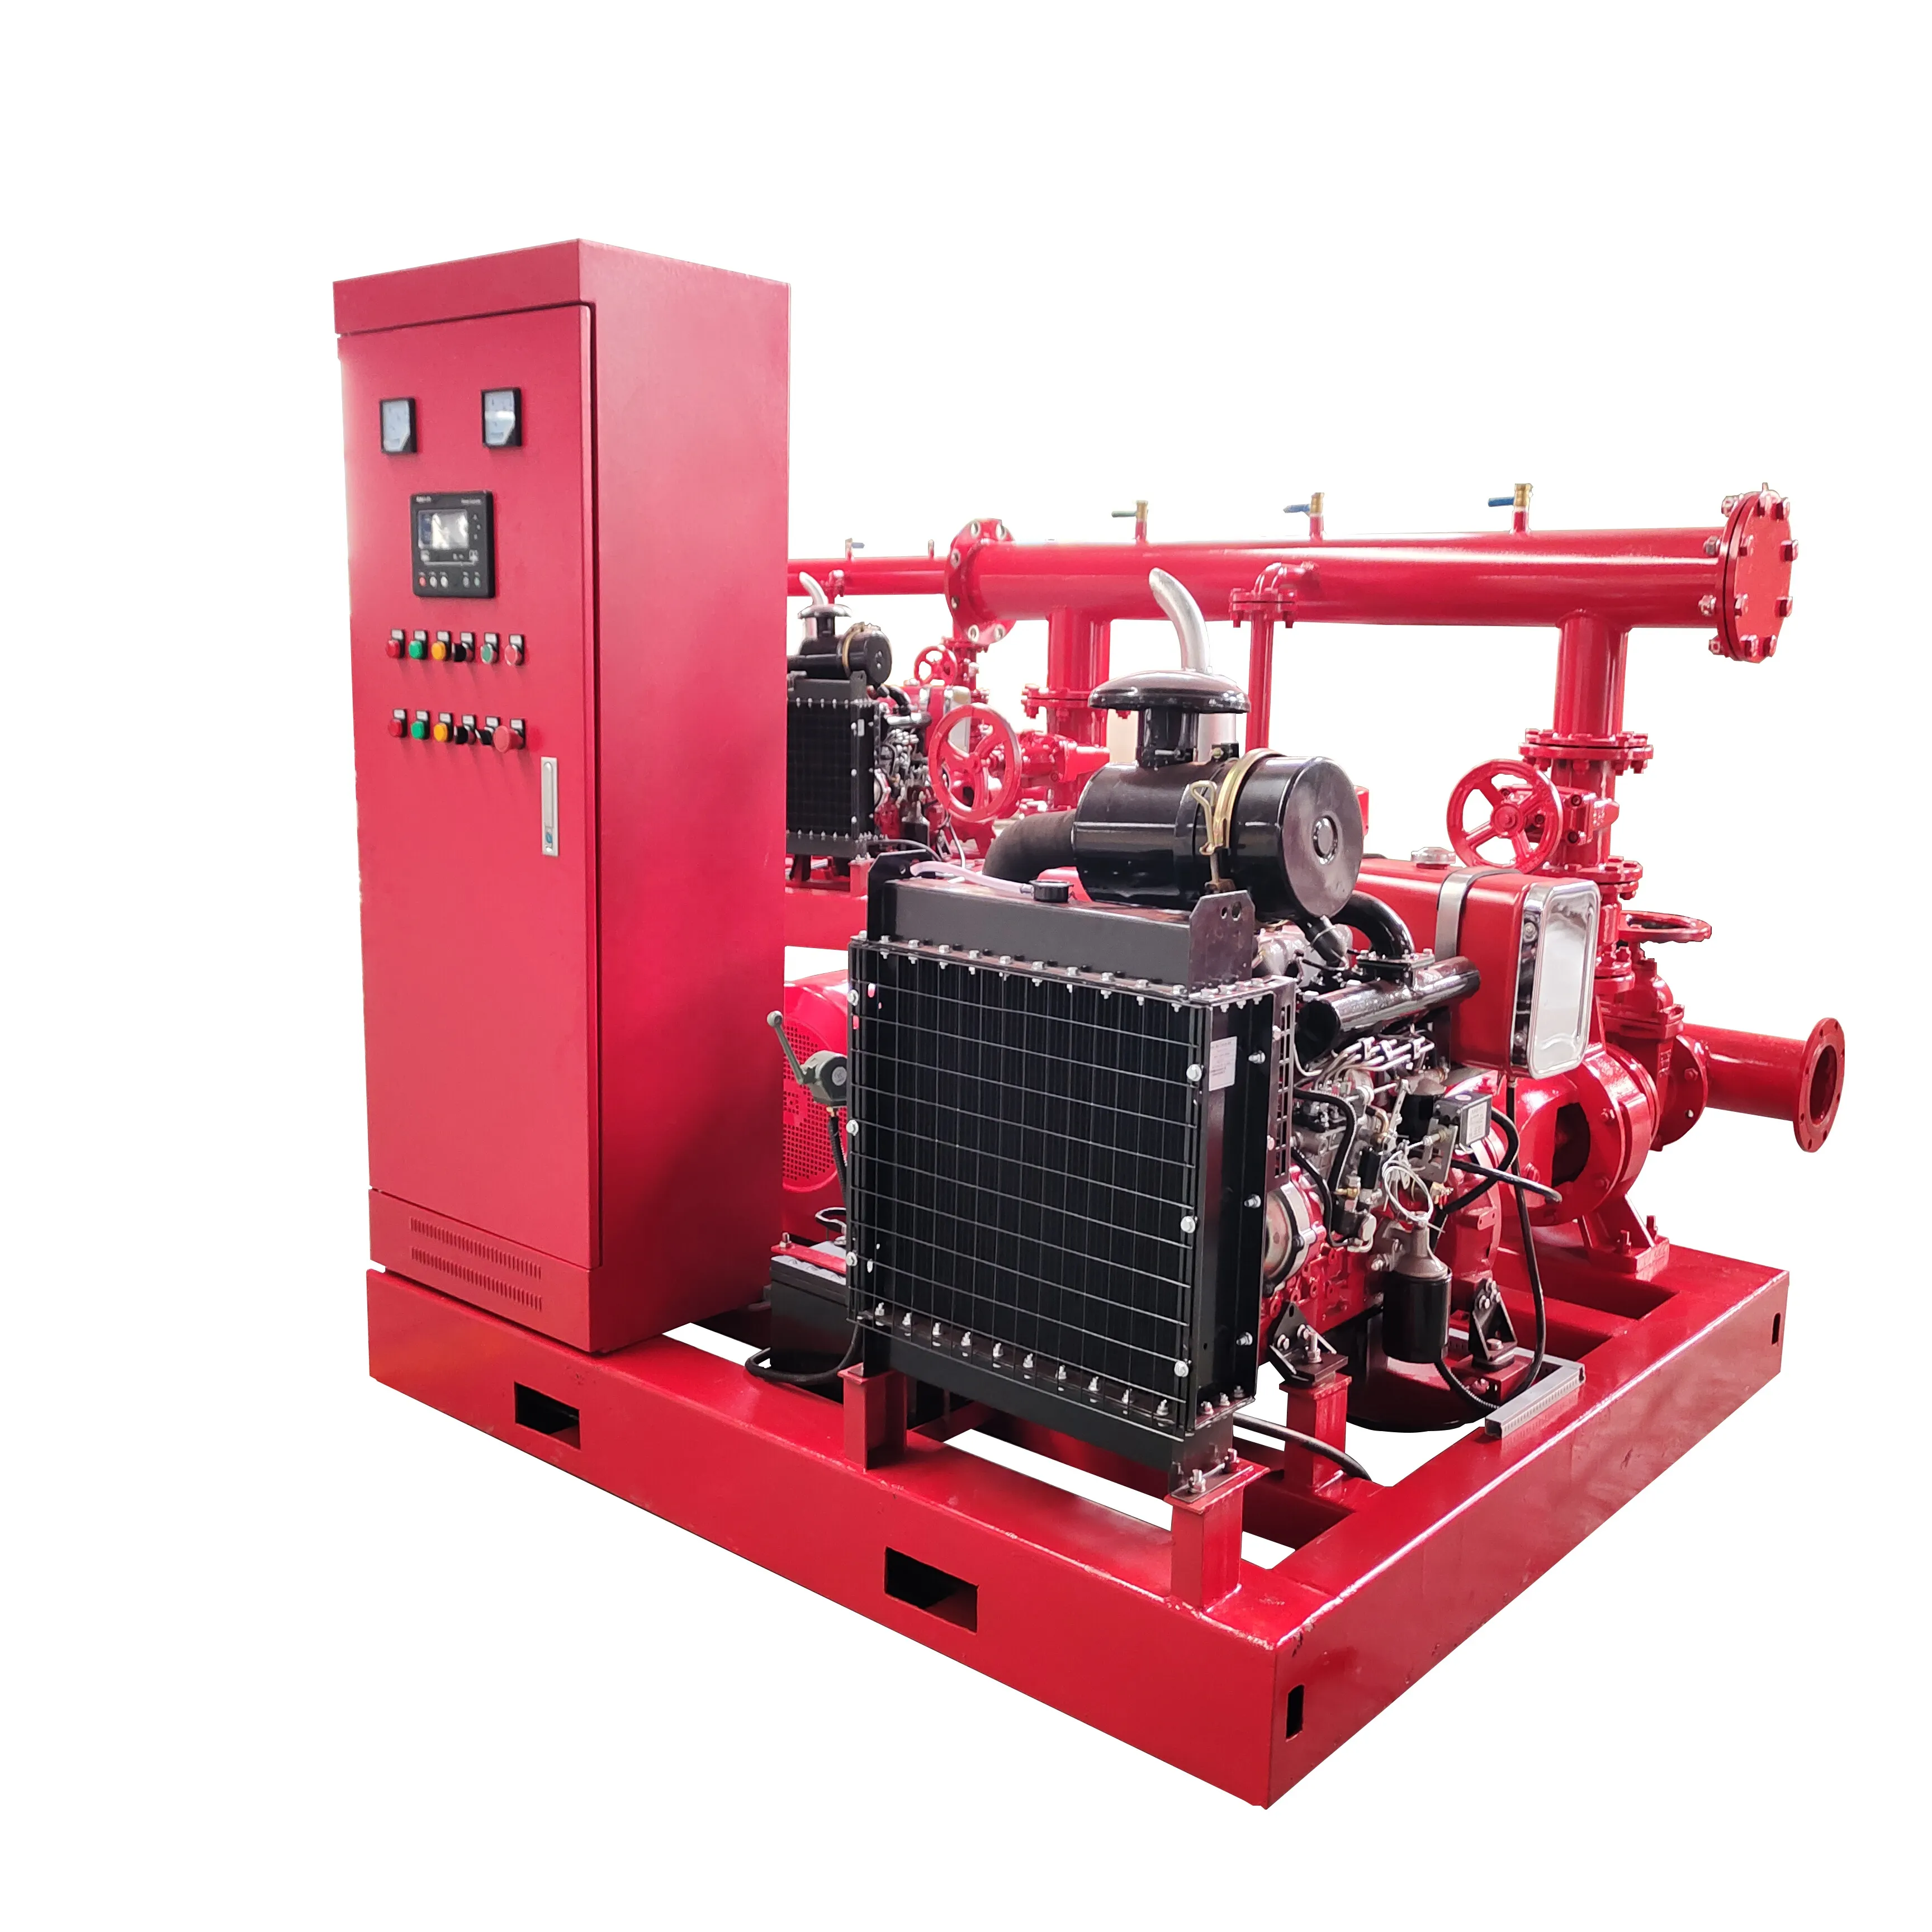 消防ポンプセットD + E + J 3システム500gpm & 一般デュアルパワー固定給水装置ディーゼルエンジン消防水ポンプ